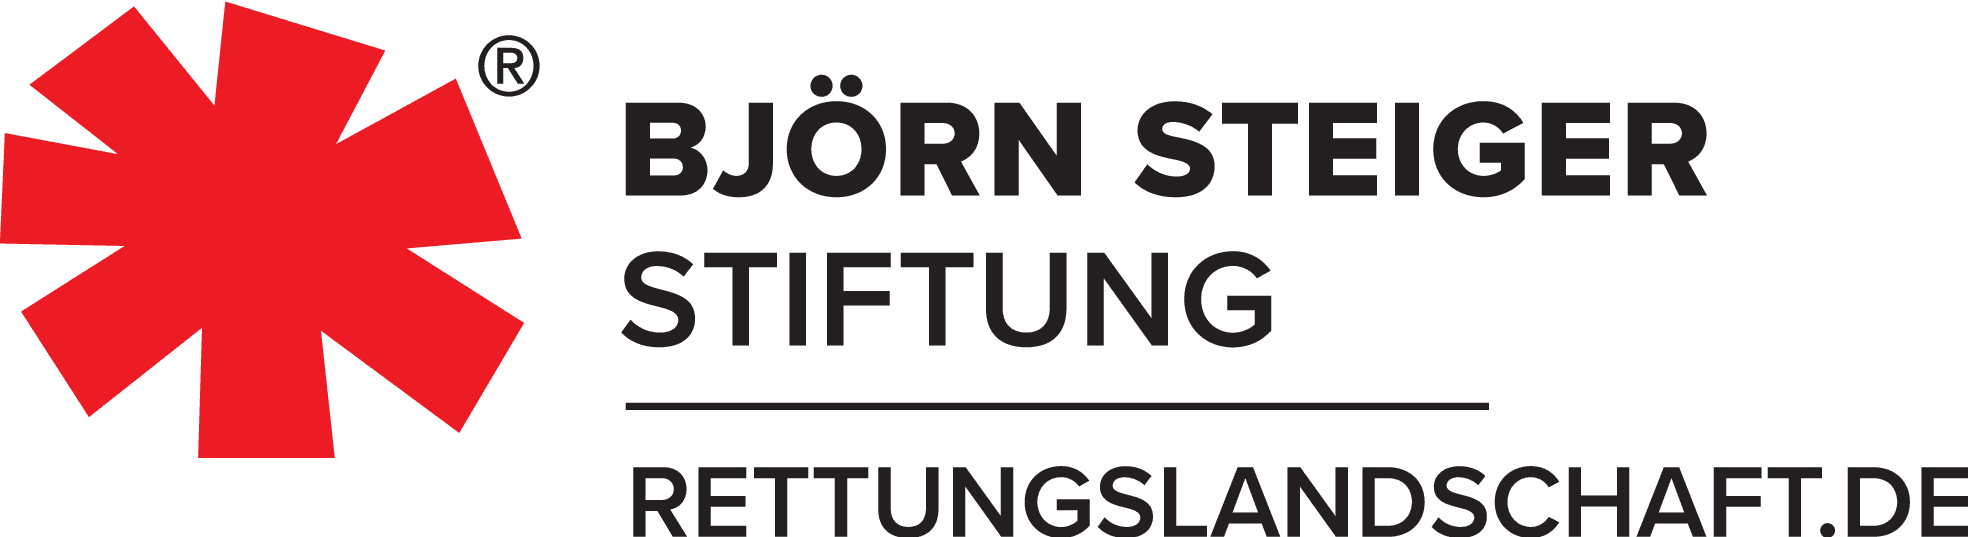 Logo Björn Steiger Stiftung, rettungslandschaft.de